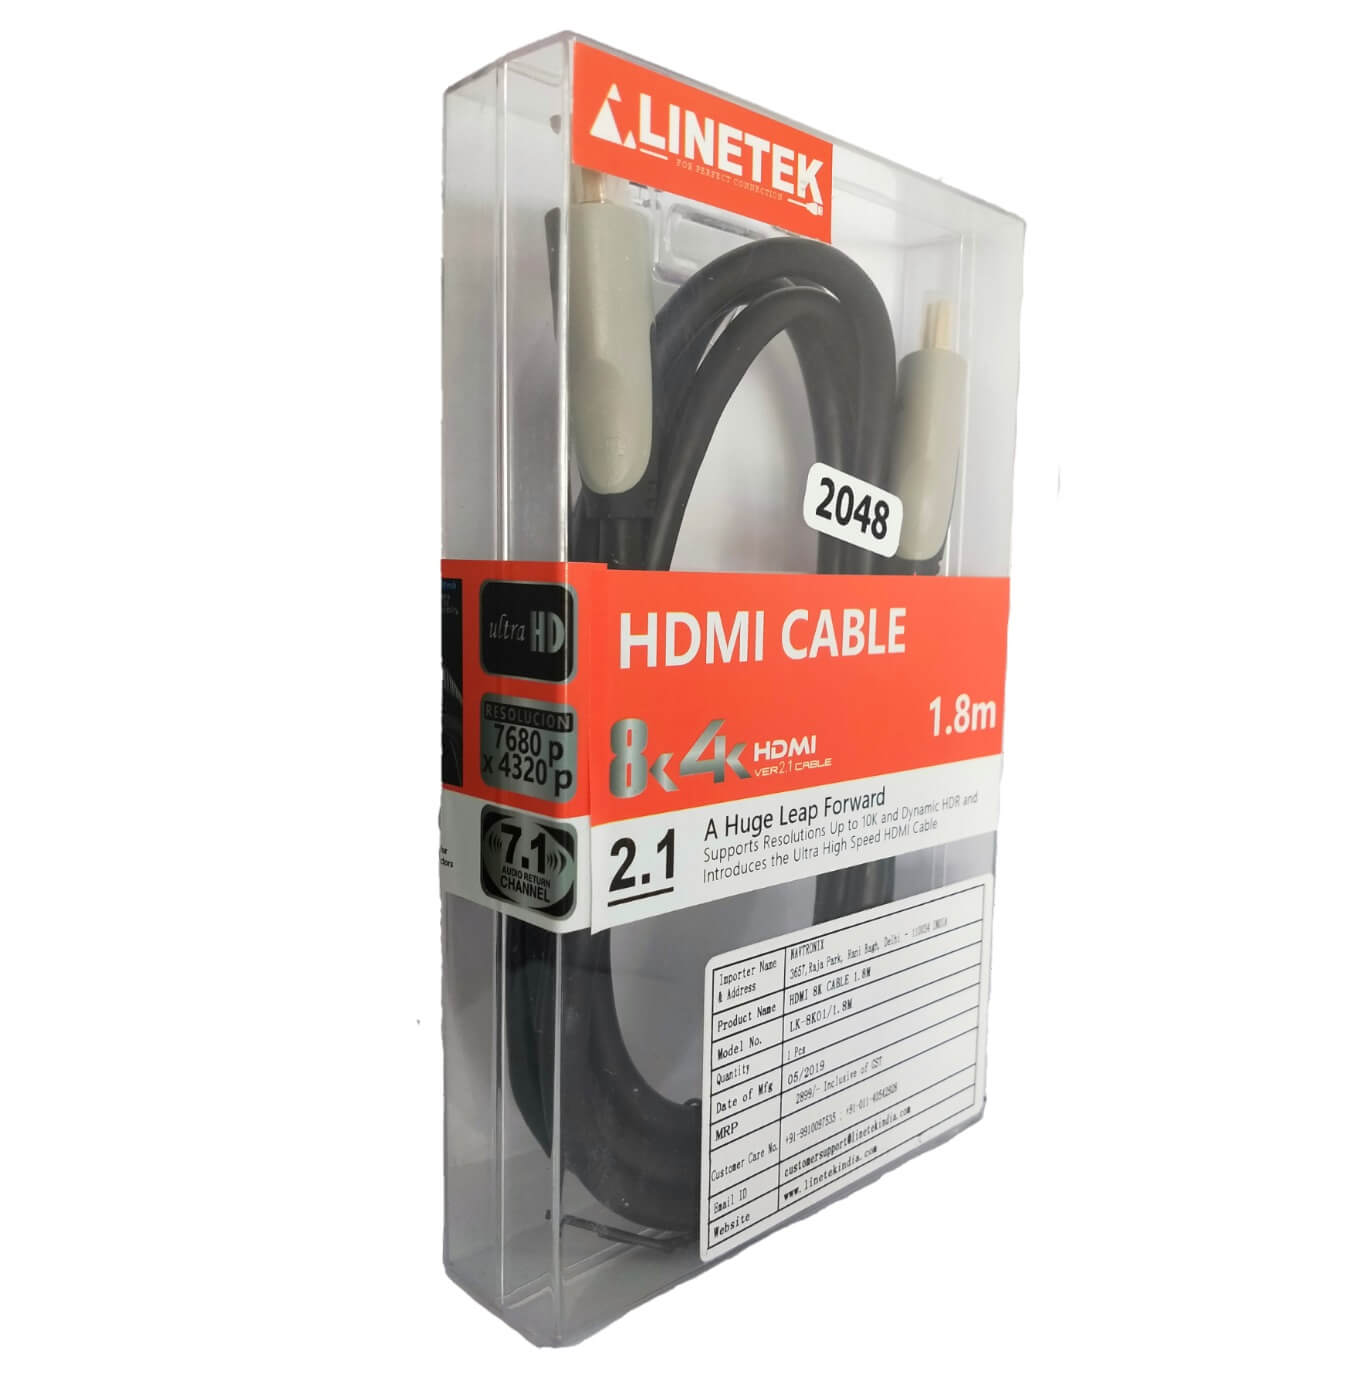 LINETEK 8K 4K HDMI CABLE 2.1V 1.8MTR